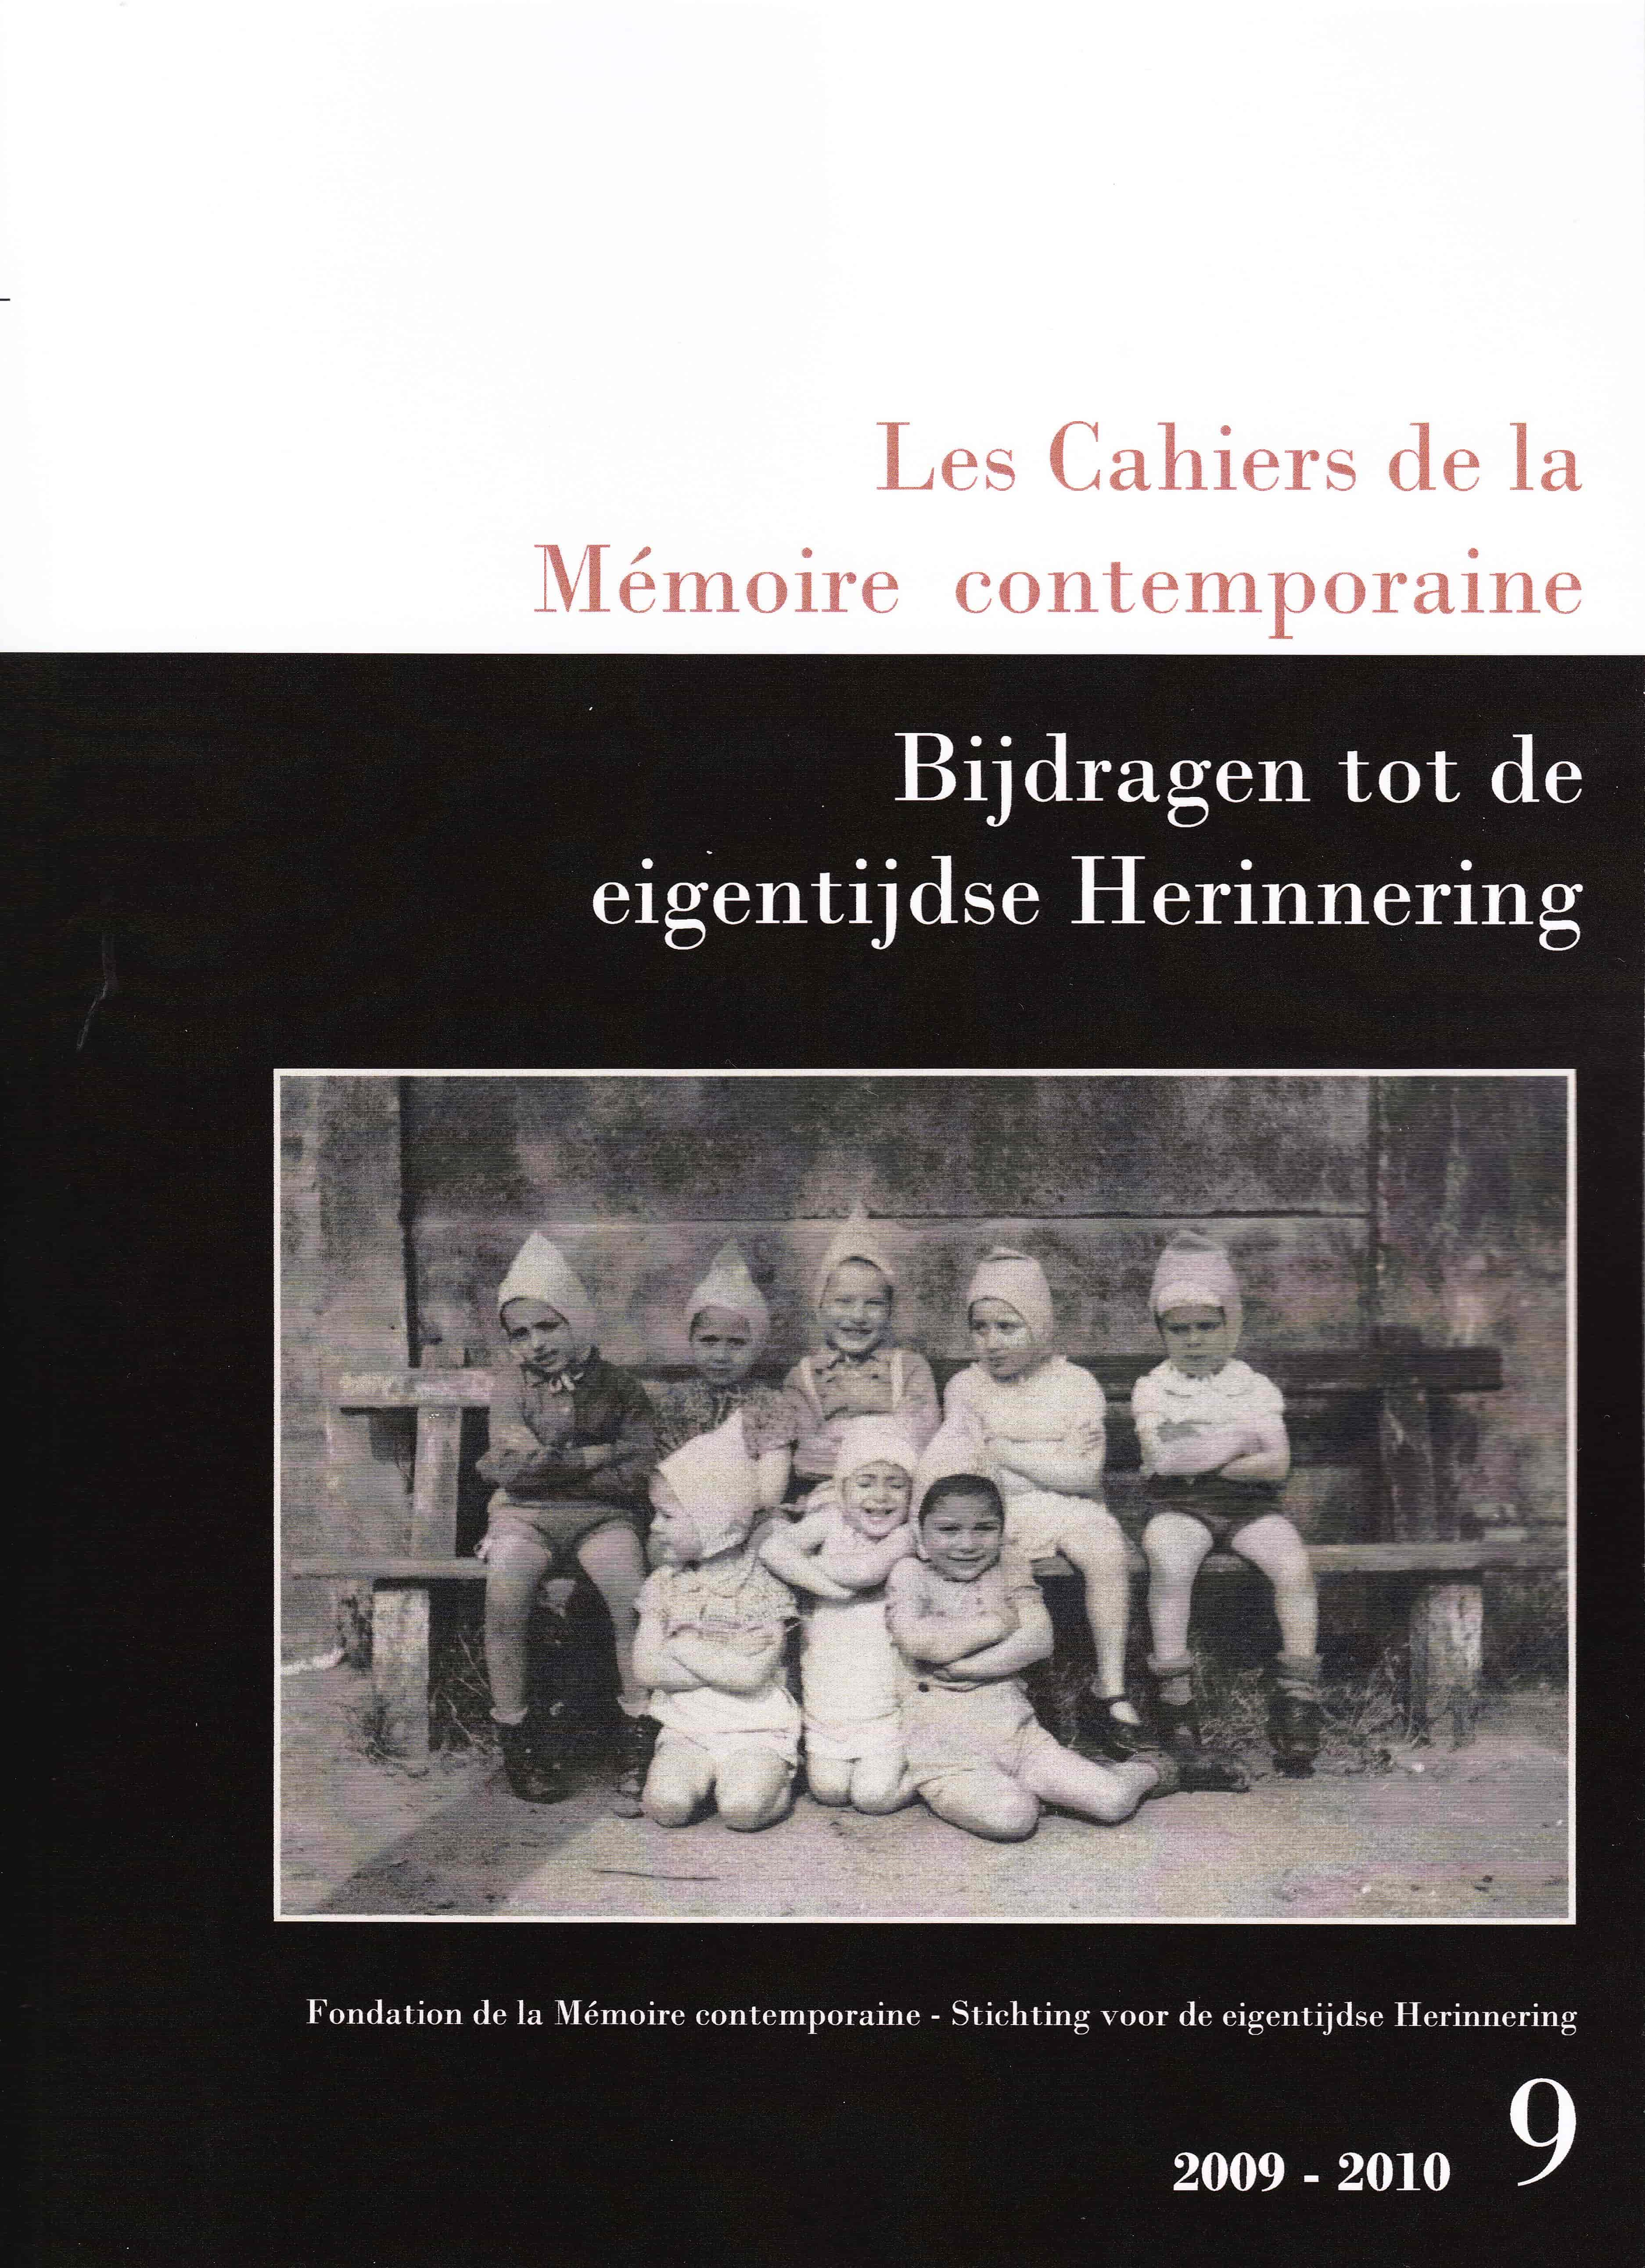 Les Cahiers de la Mémoire Contemporaine 9-2009-2010